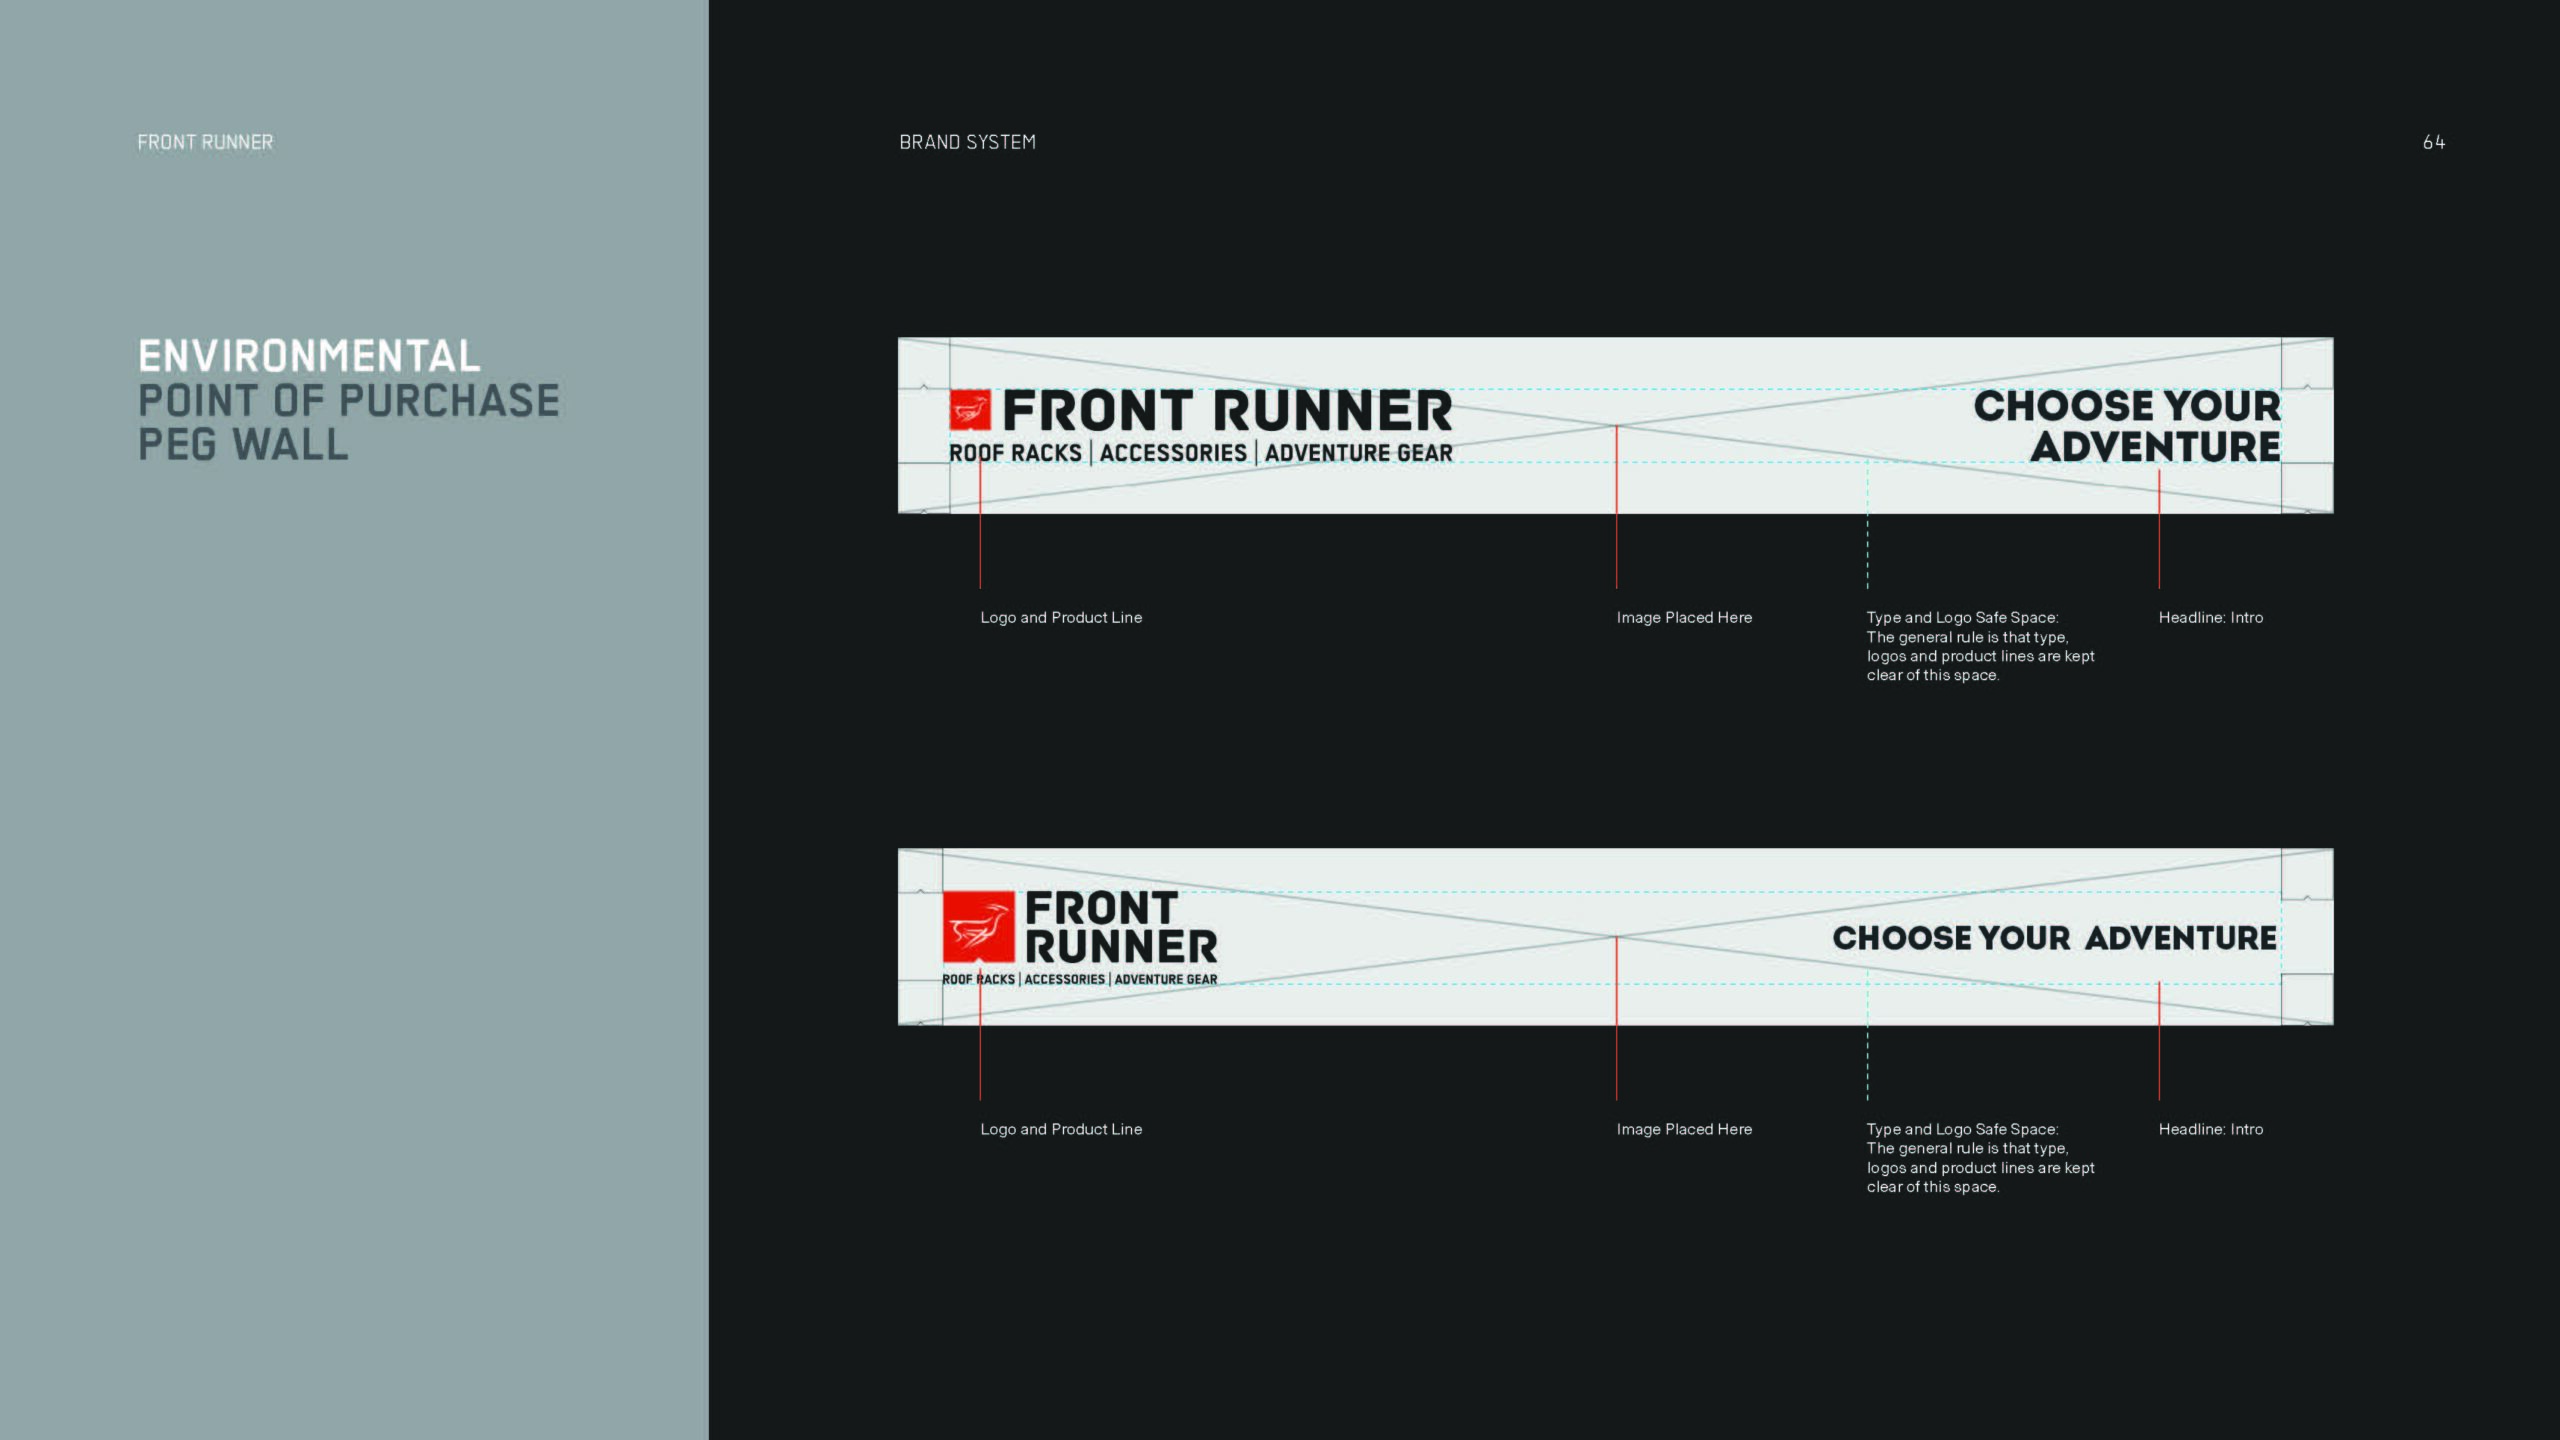 Front Runner Brand Guidelines